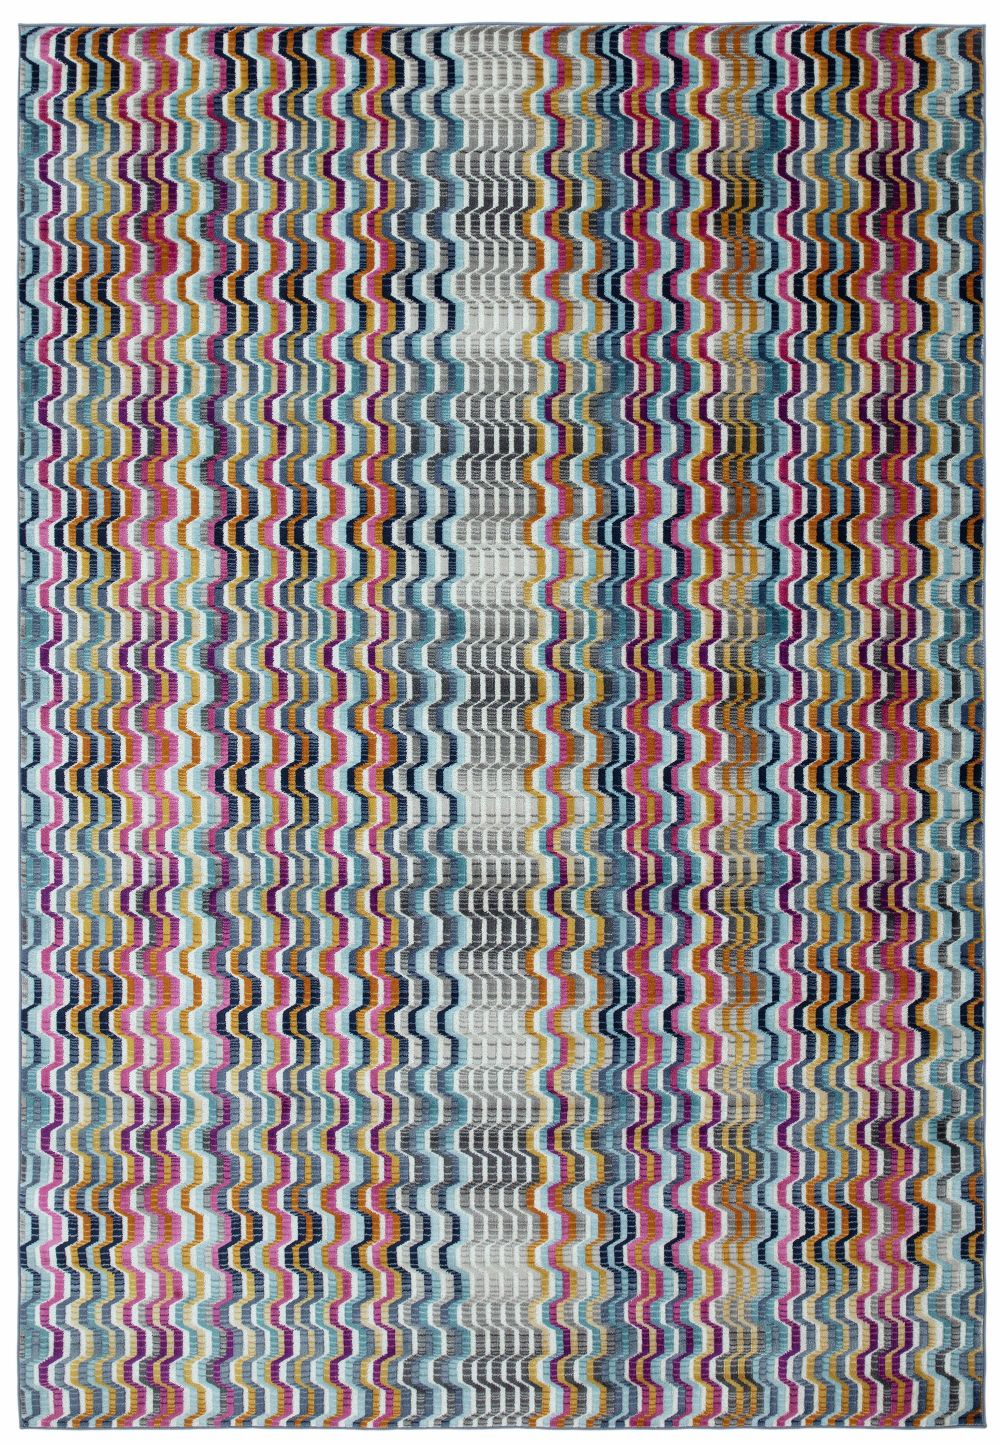 Barevný koberec Primiti Stripe Rozměry: 200x300 cm